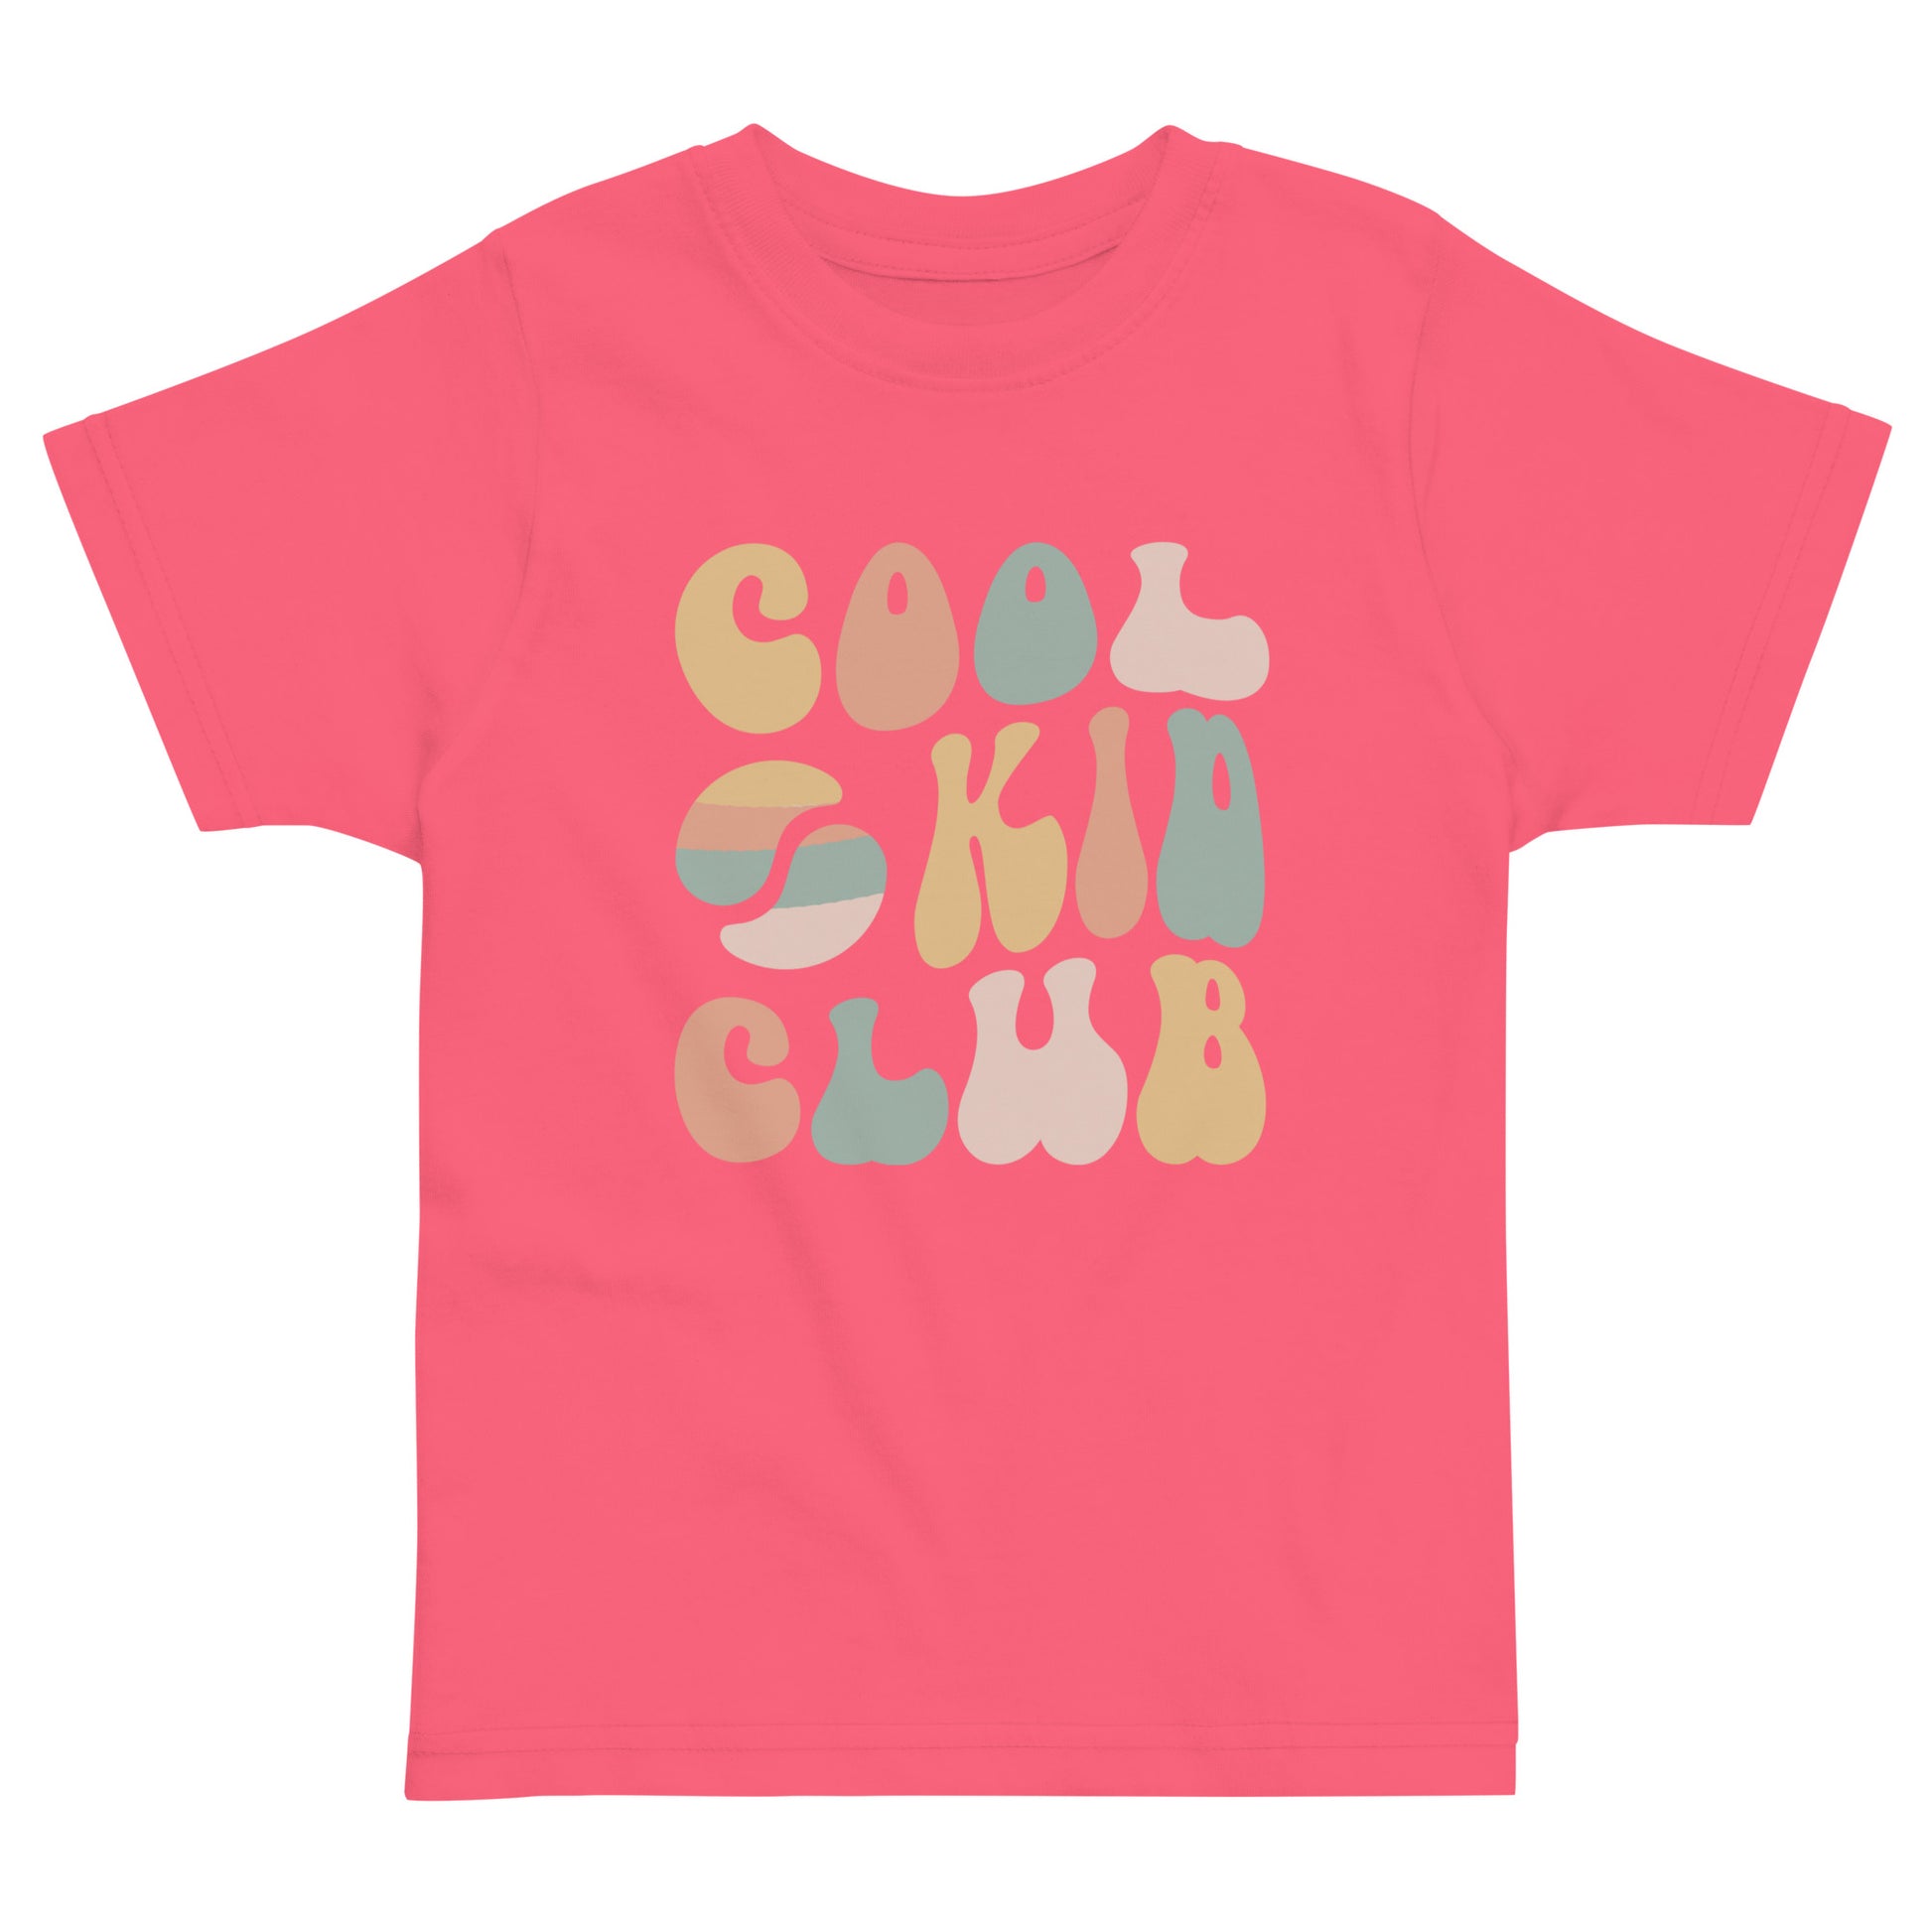 Cool Kid Club Tee (Toddler) Hot Pink